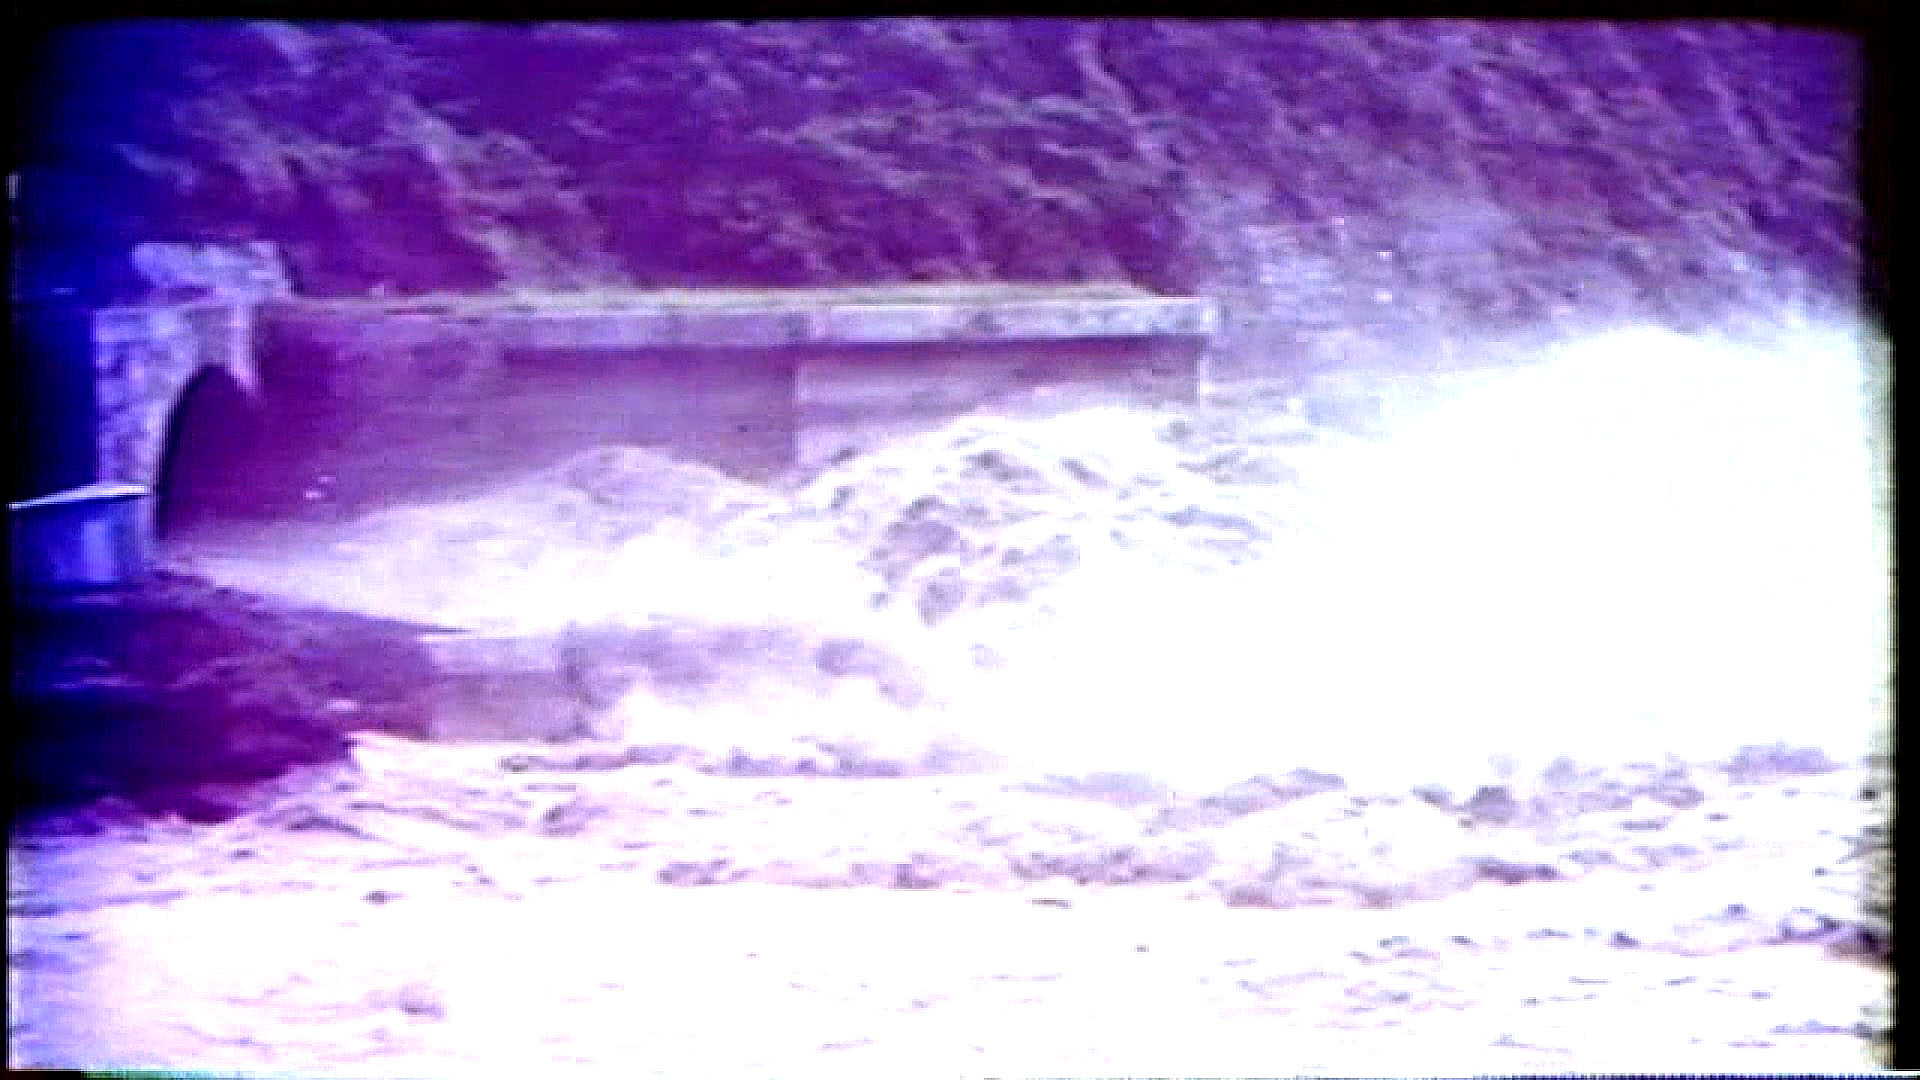 榮工處承辦之曾文水庫導水隧道出口完工遇艾瑞斯颱風(民國59年)來襲的洪水景像